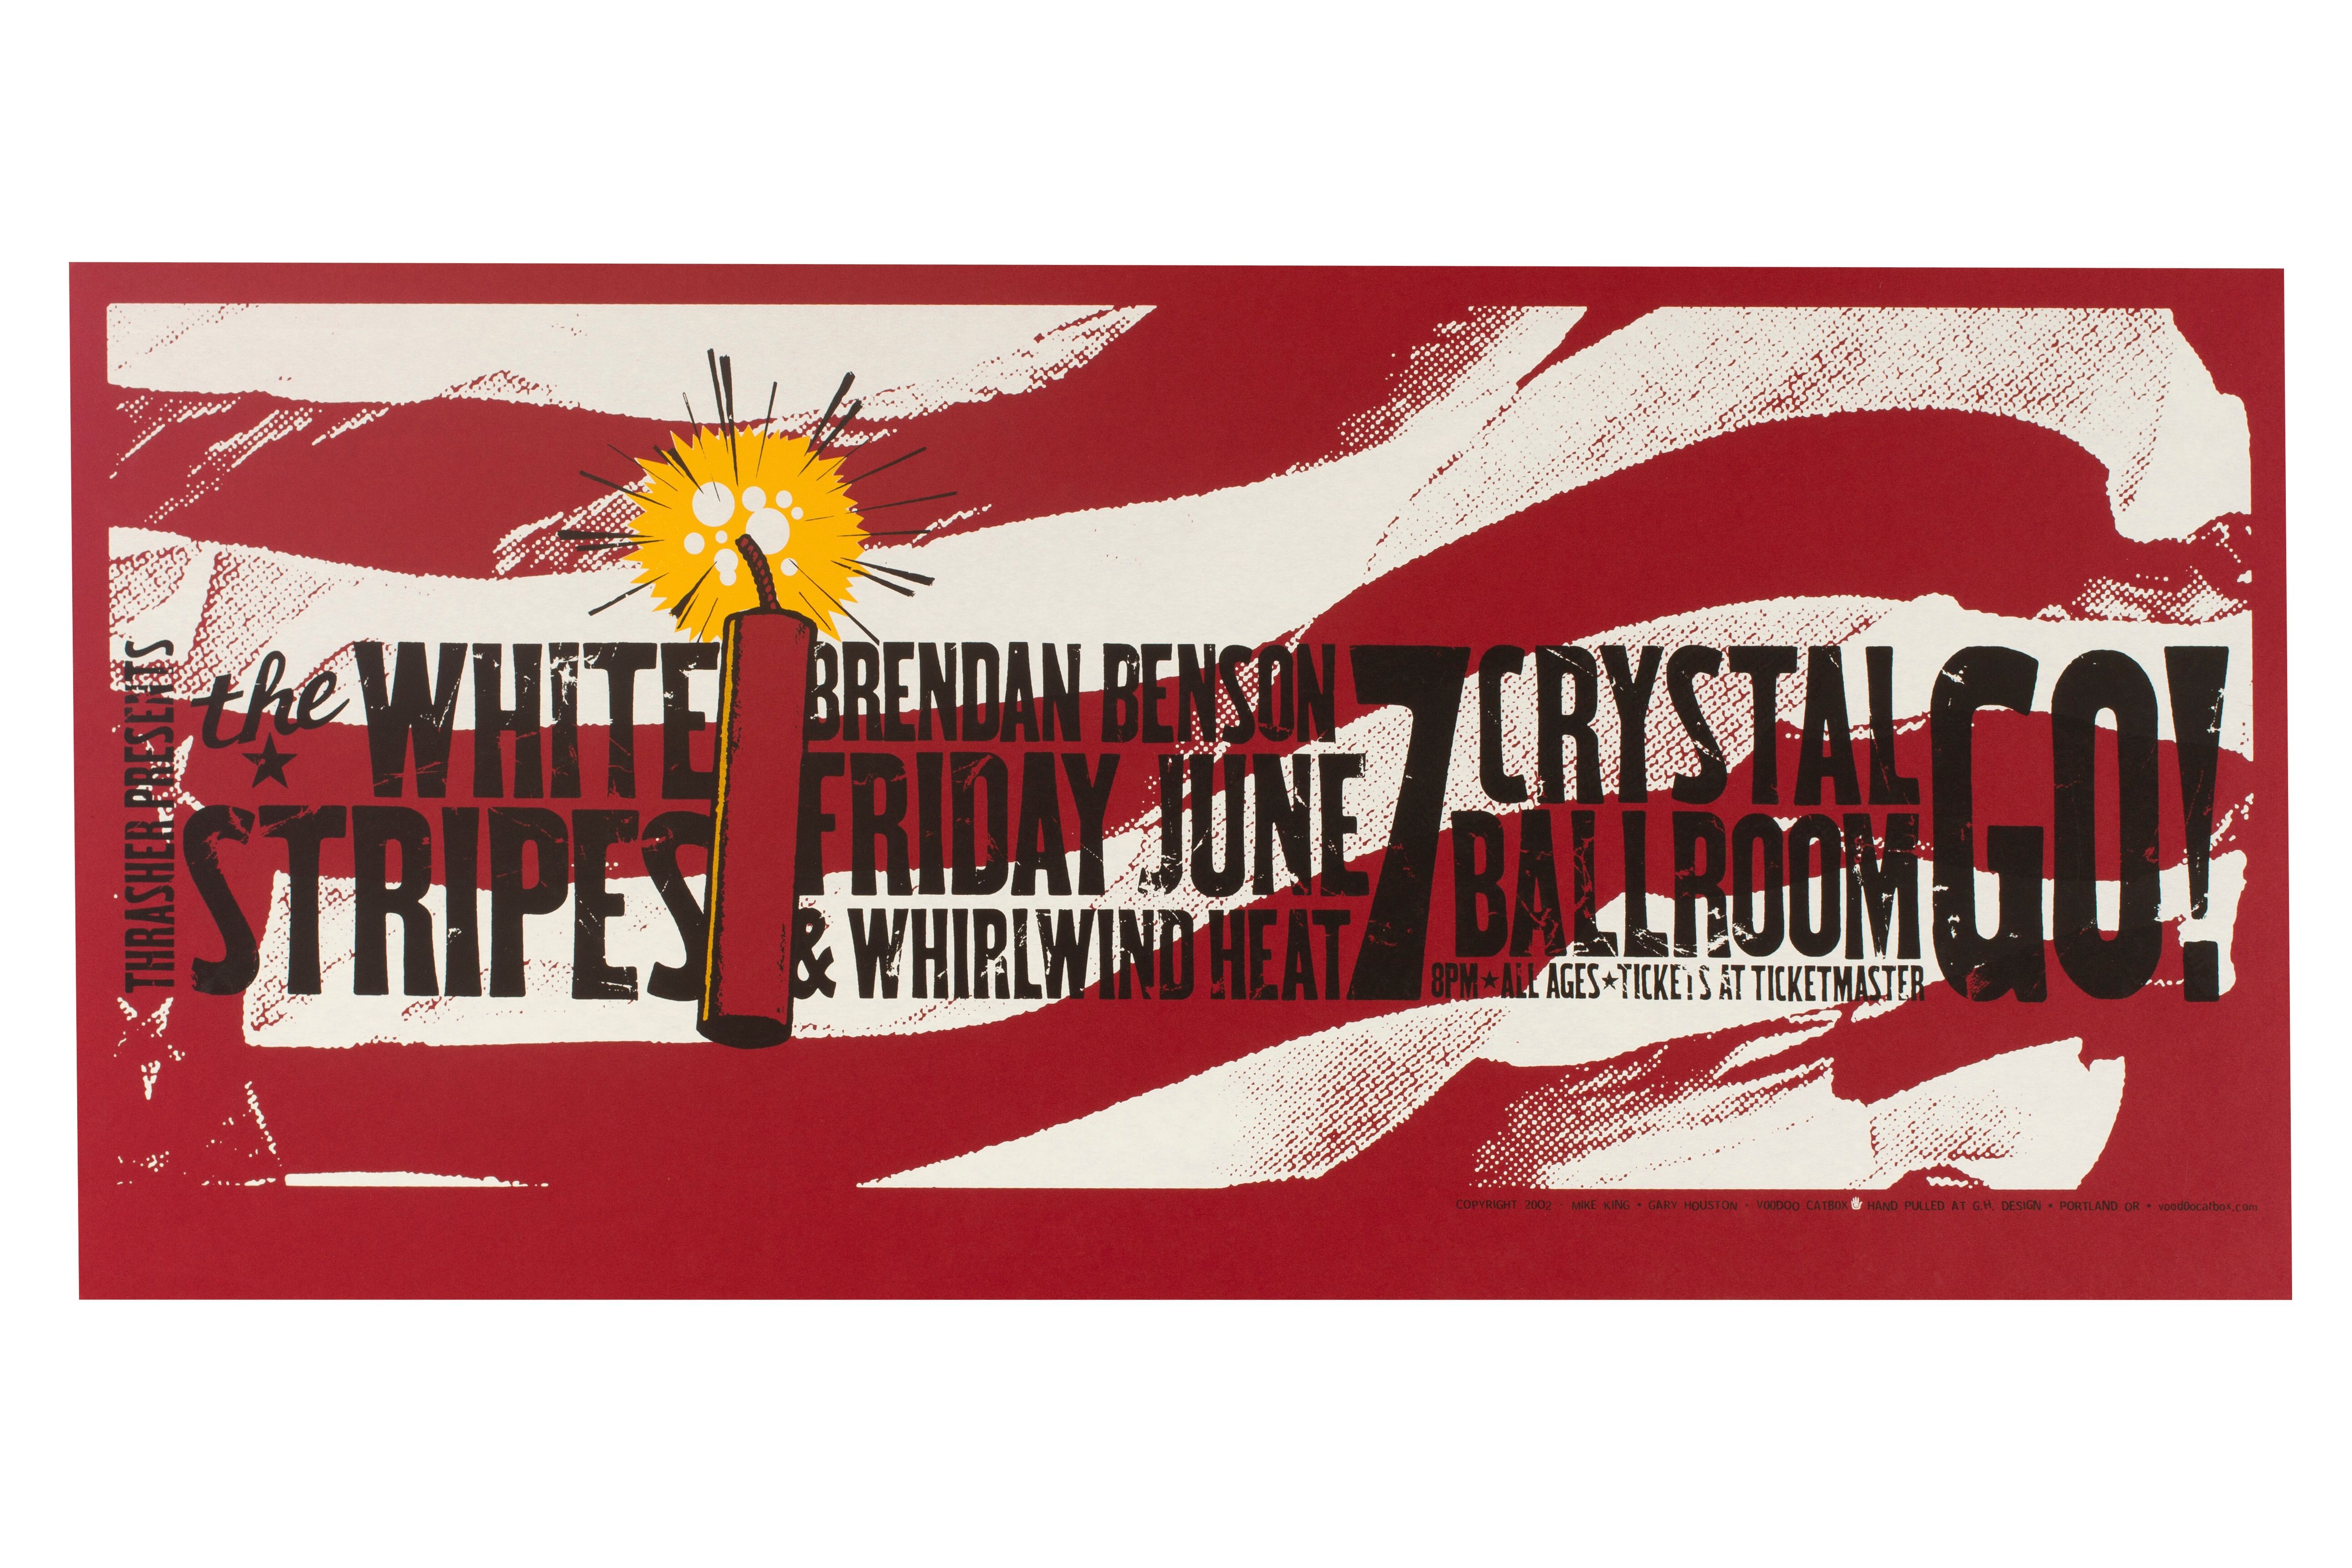 MXP-70.6 White Stripes Crystal Ballroom 2002 Concert Poster